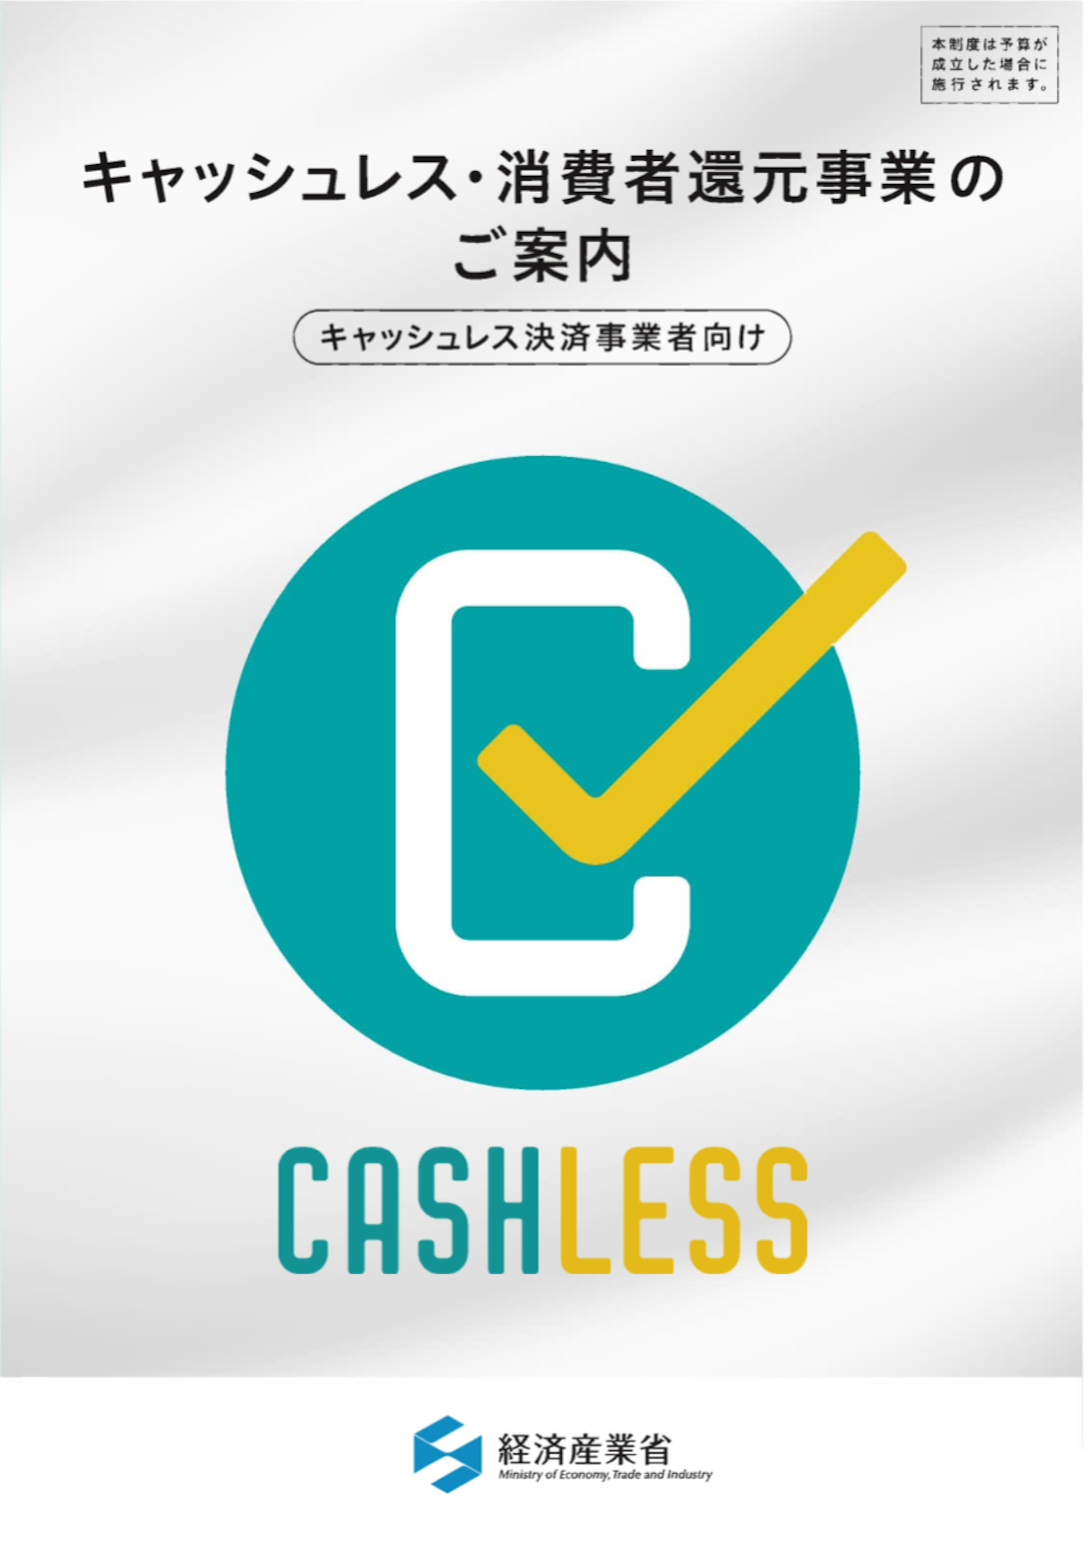 キャッシュレス･消費者還元事業2019年4月〜店舗登録を開始